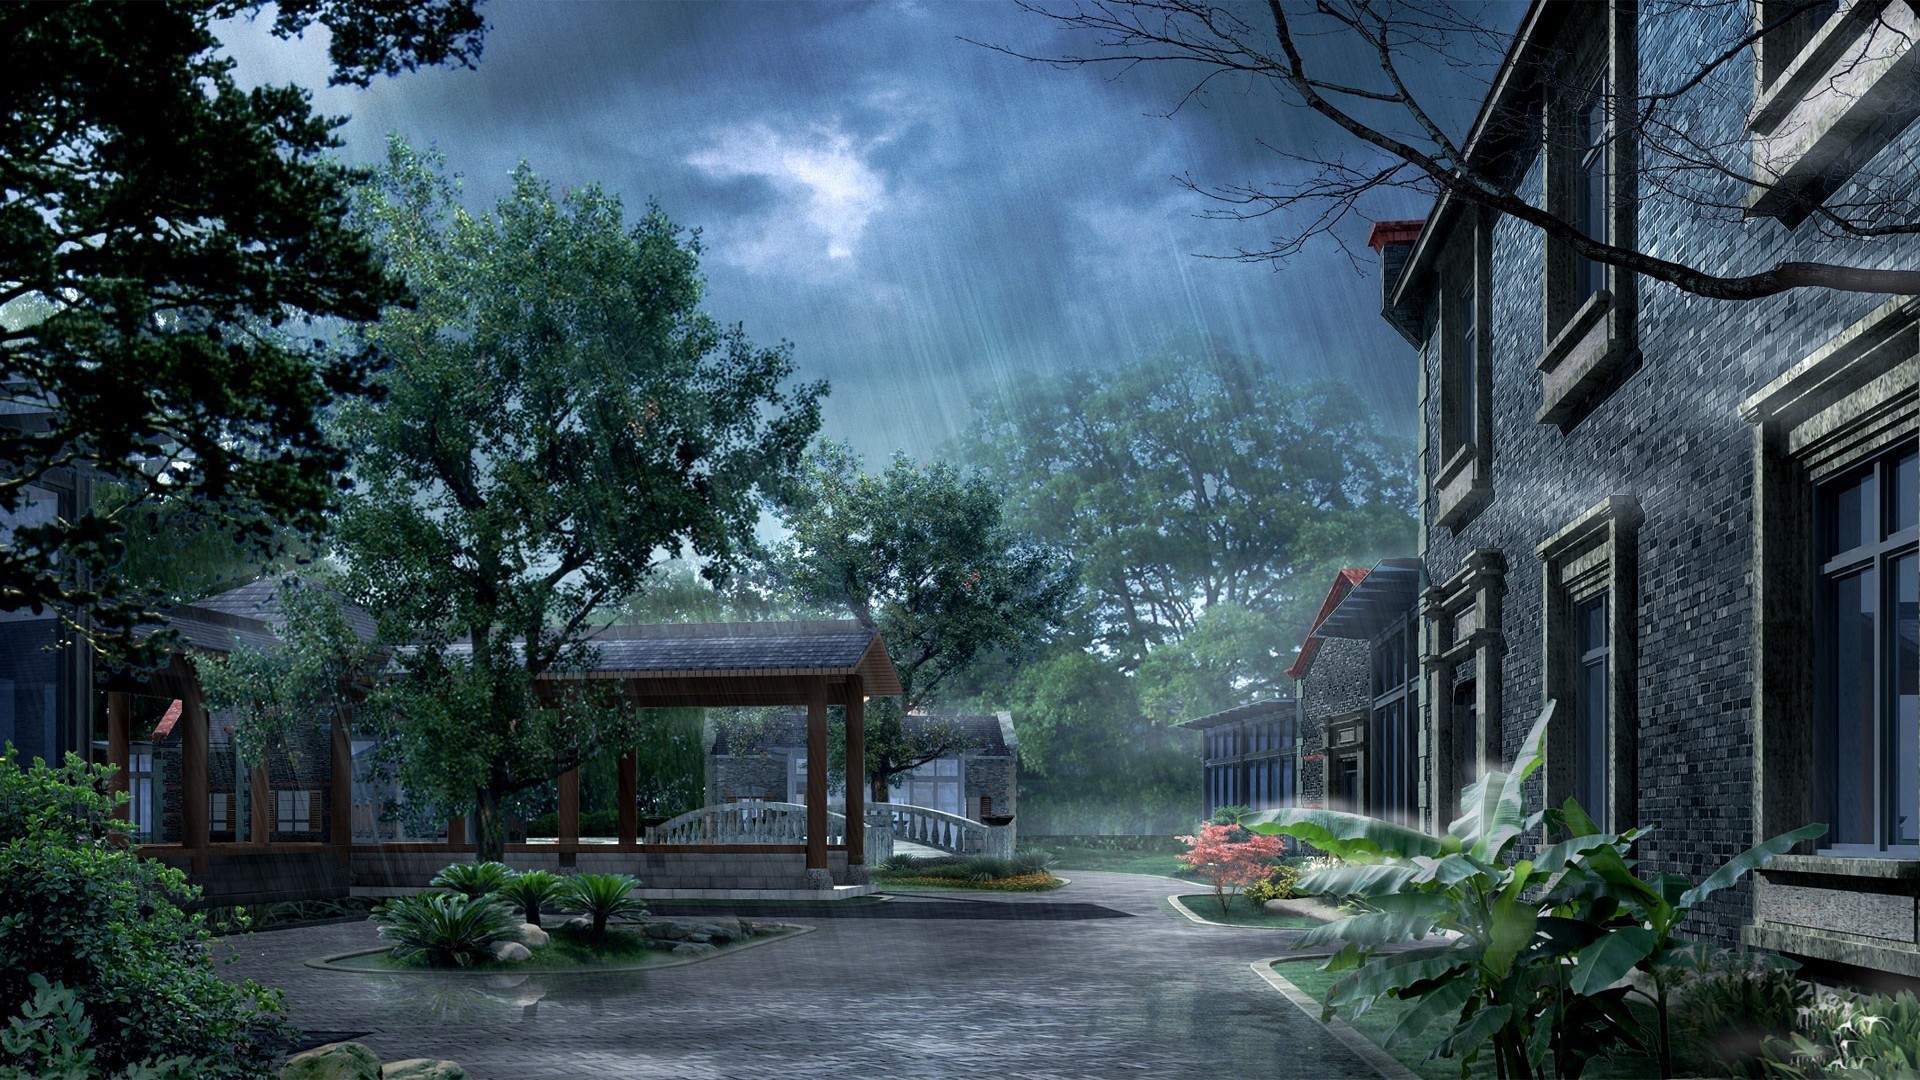 saison des pluies fond d'écran hd,la nature,ciel,maison,arbre,maison